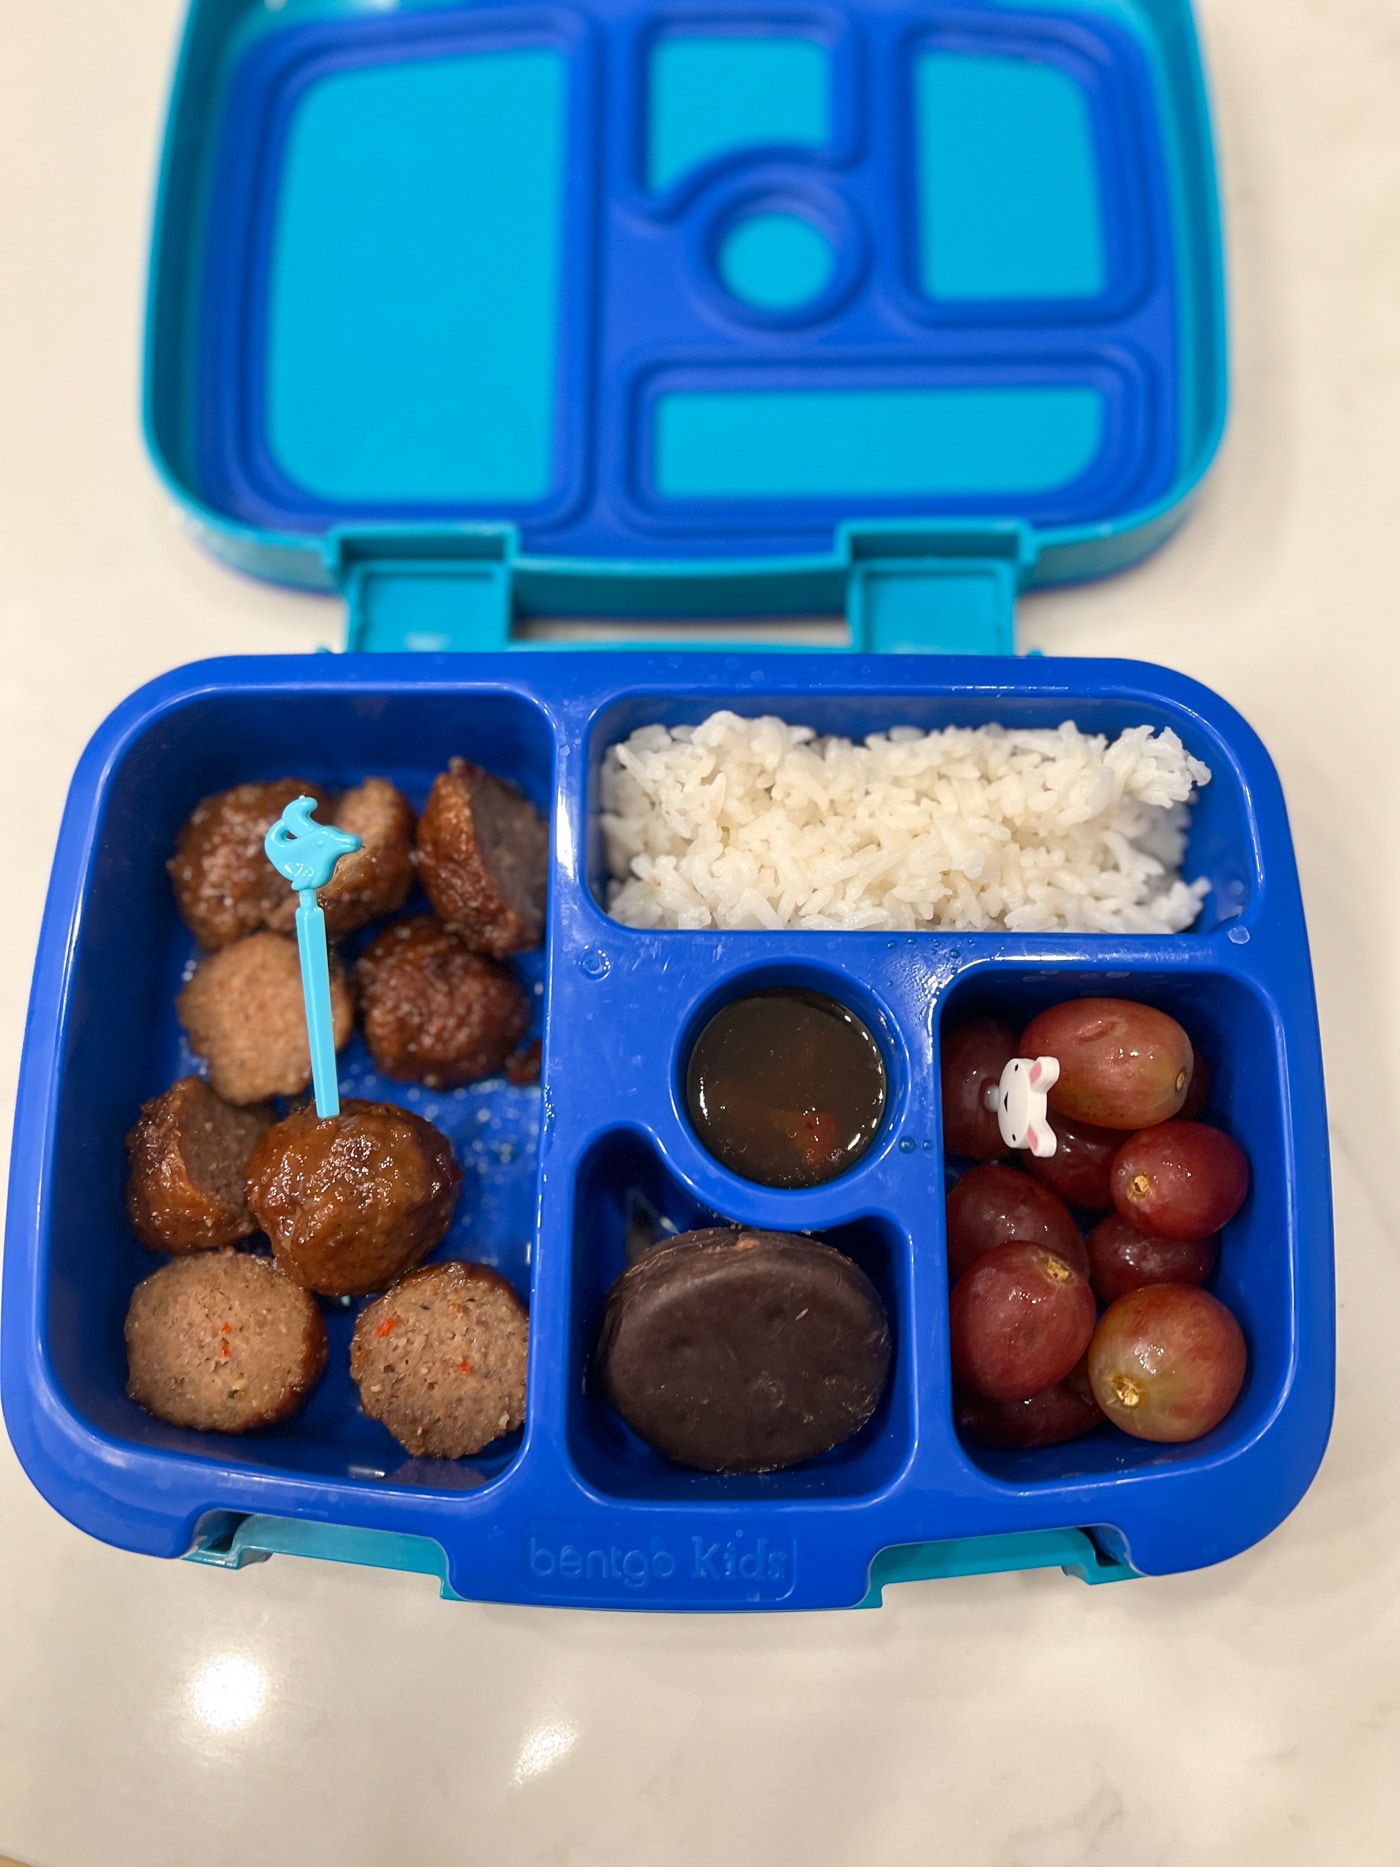 Bentgo box lunch ideas for a school lunch.